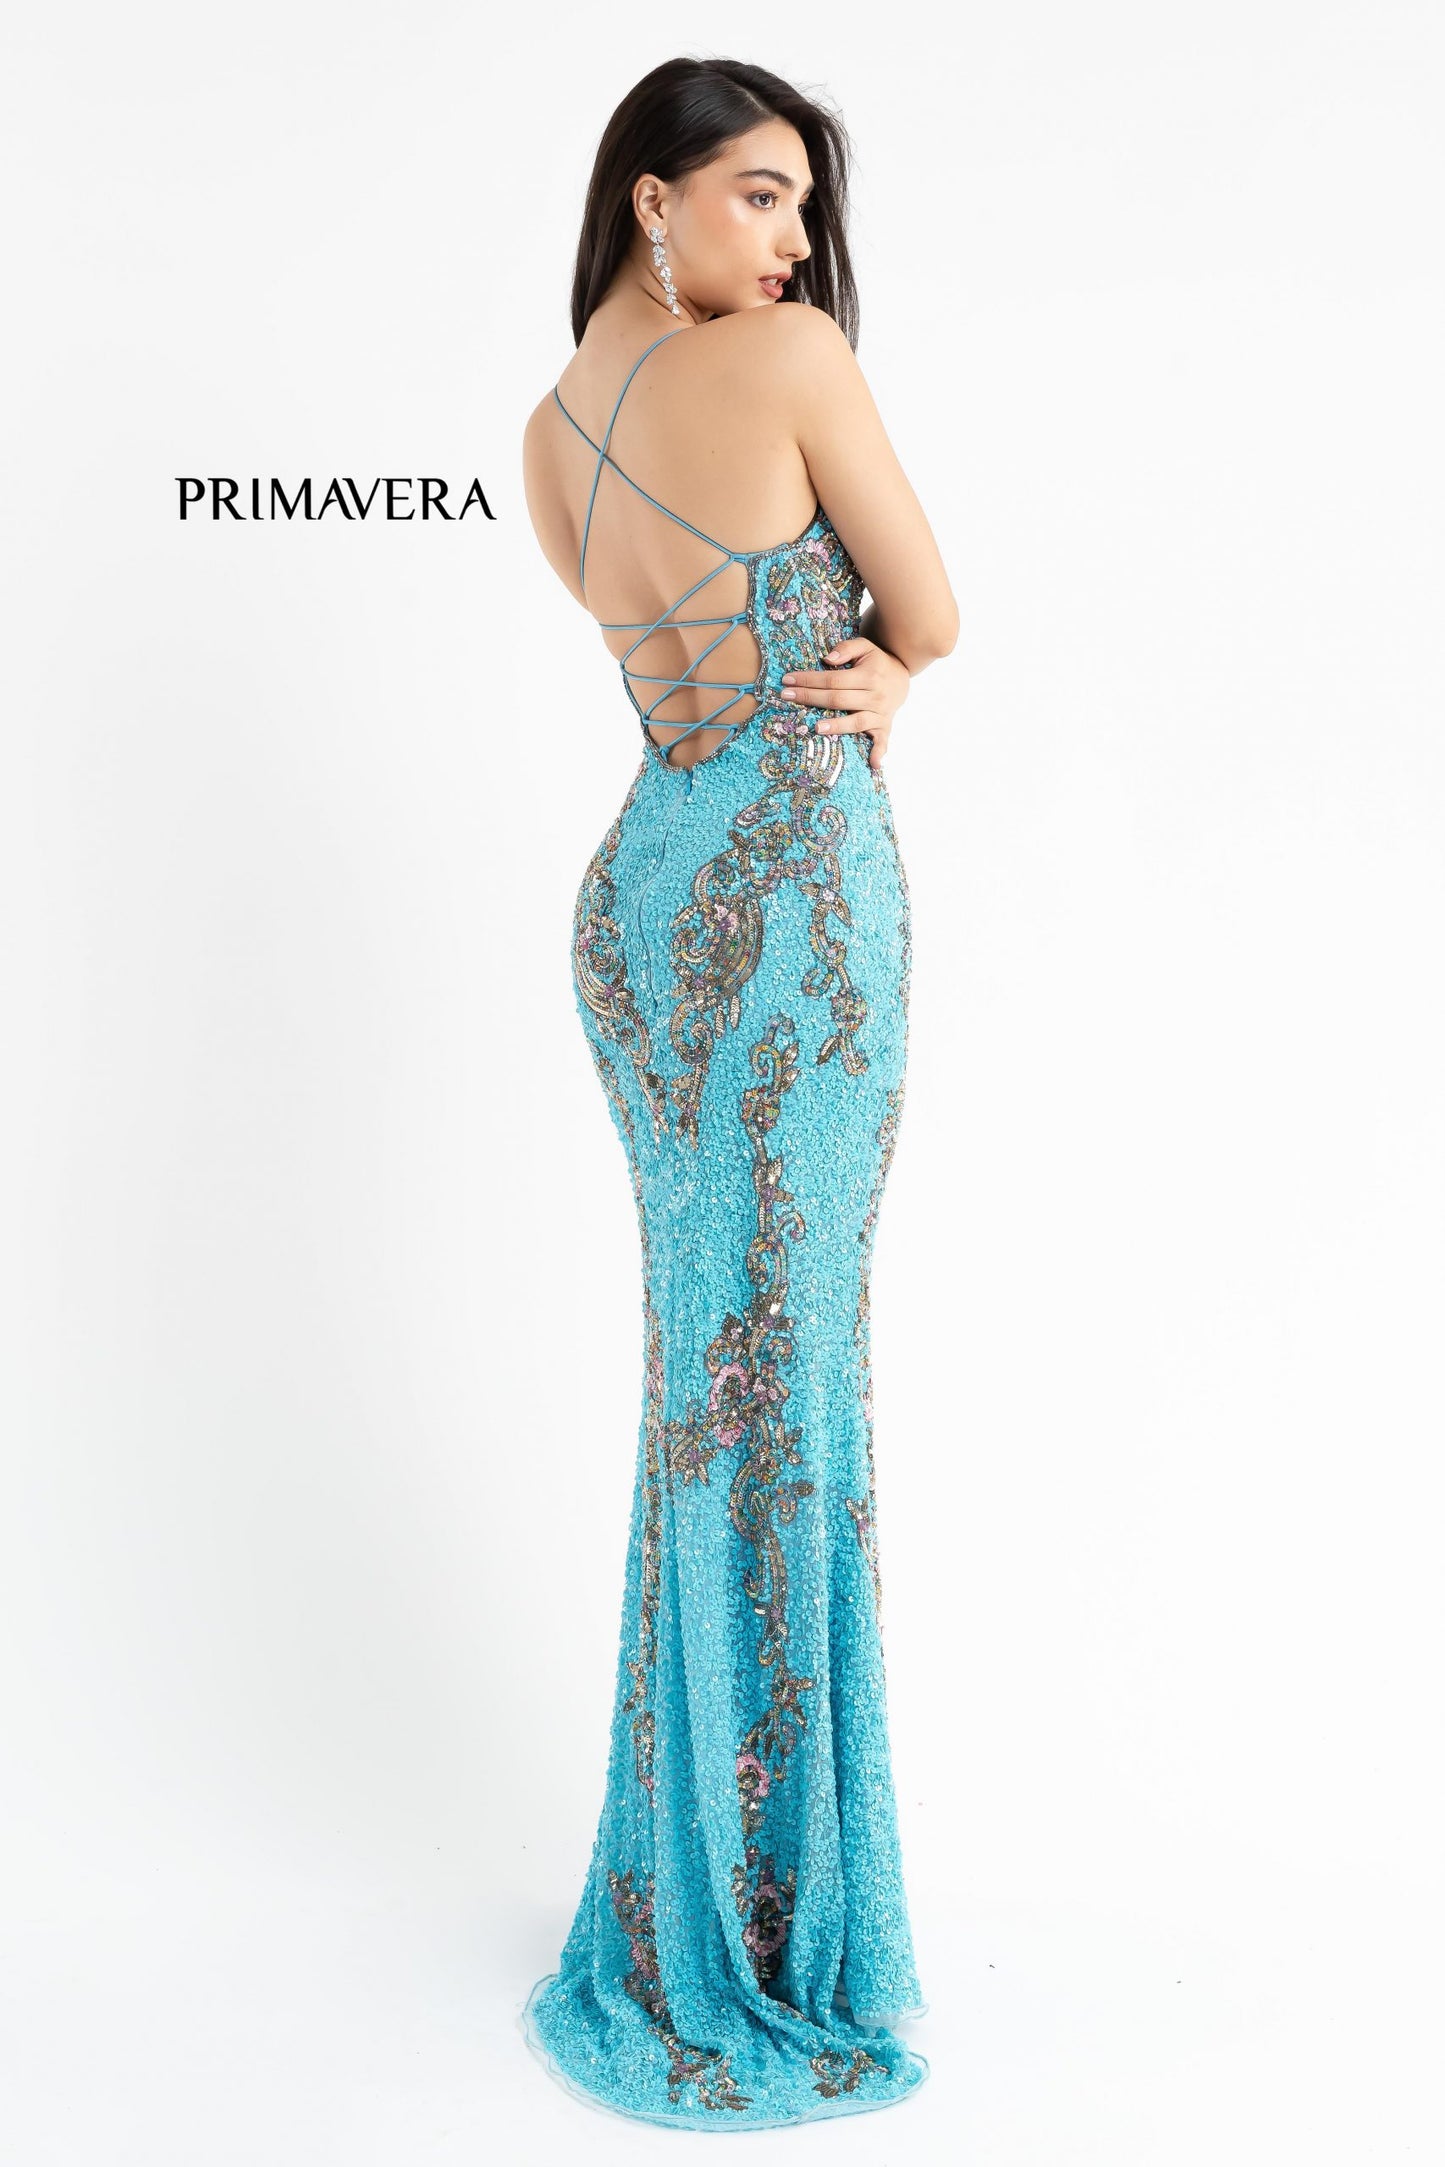 Primavera-Couture-3211-Turquoise-prom-dress-back-v-neckline-floral-sequins-lace-up-tie-back-slit